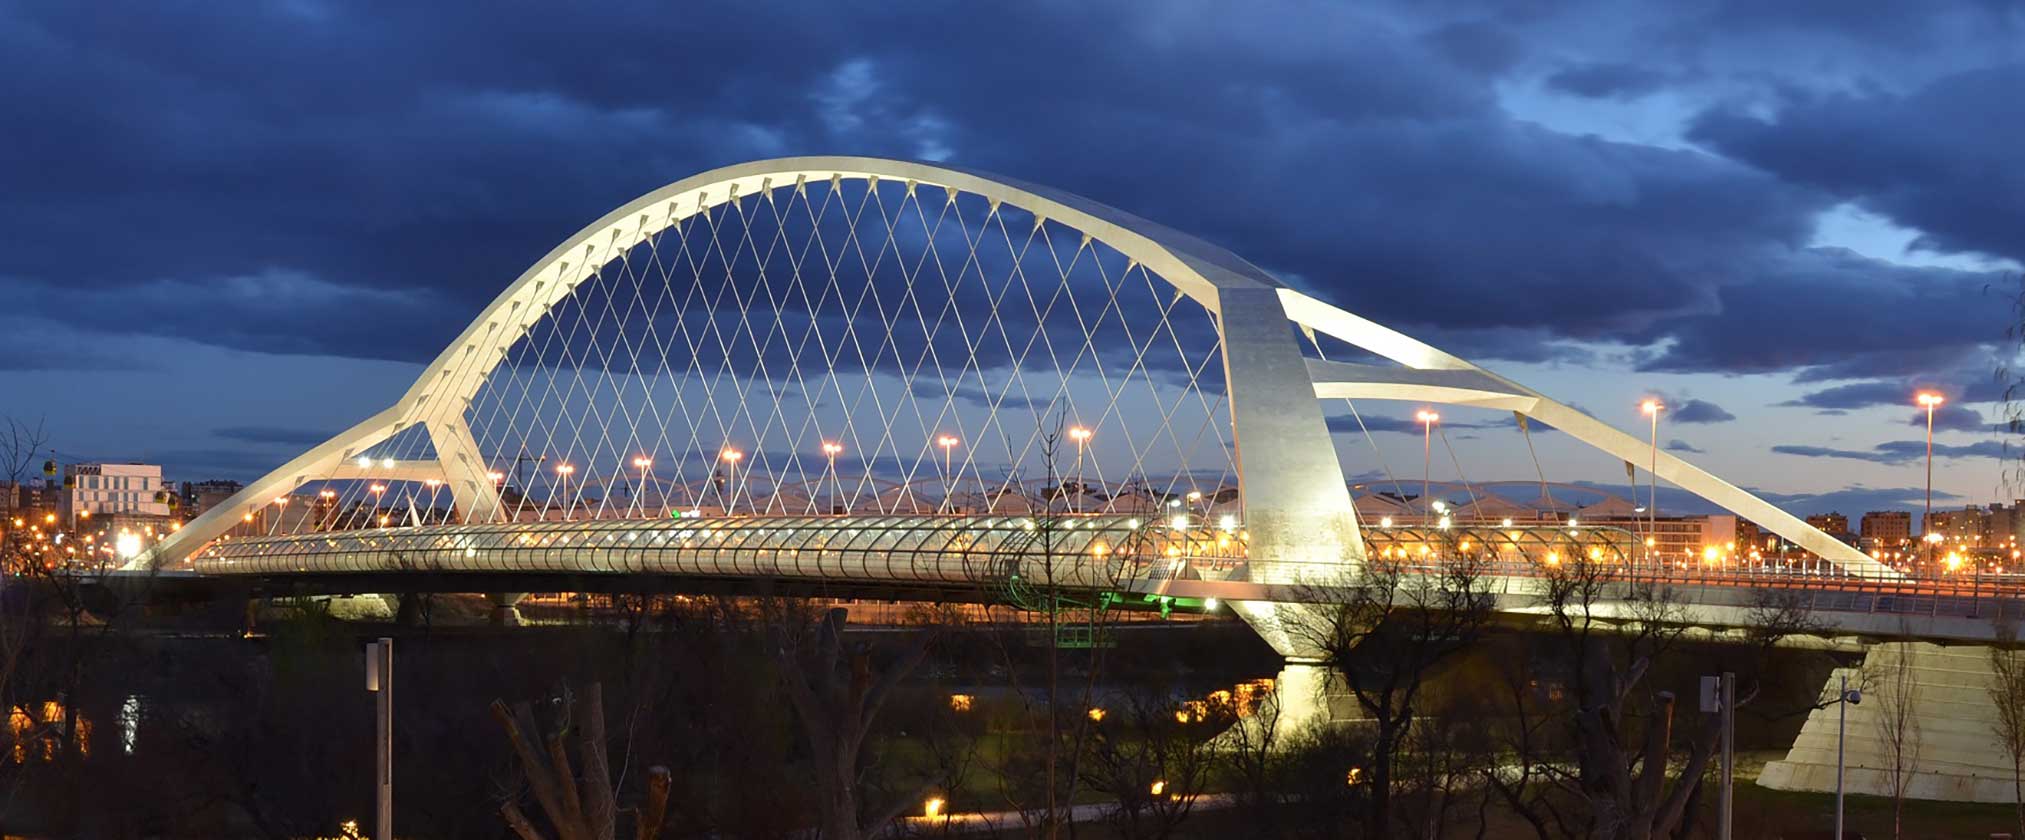 Third Millennium híd - vasbeton szerkezet